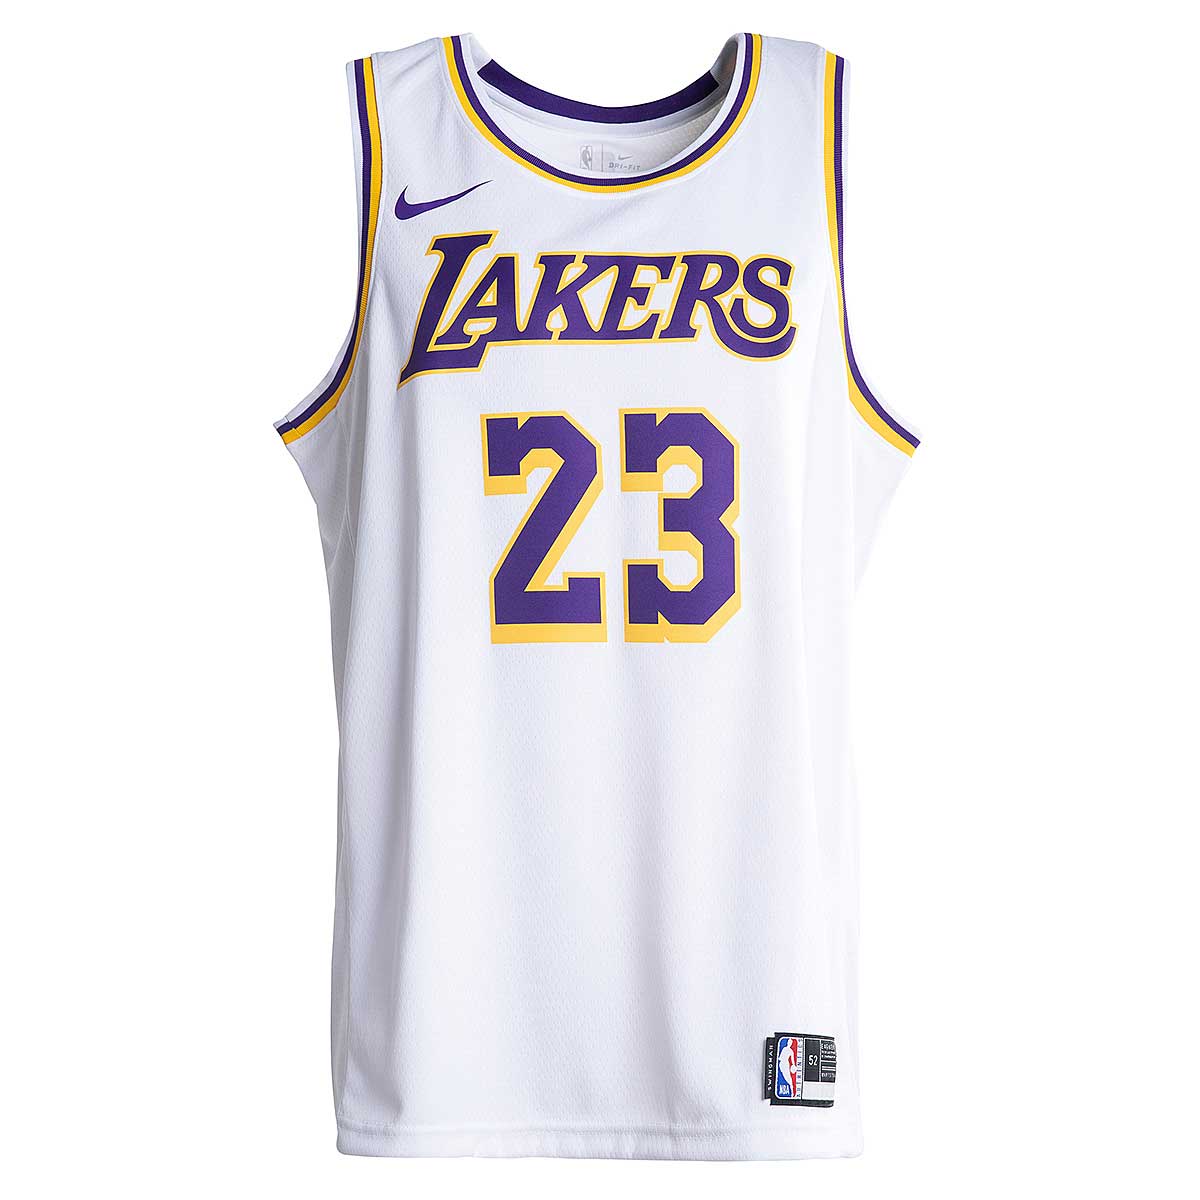 Buy NBA SWINGMAN JERSEY JAMES LA LAKERS ASSOCIATION for N/A 0.0 on ...